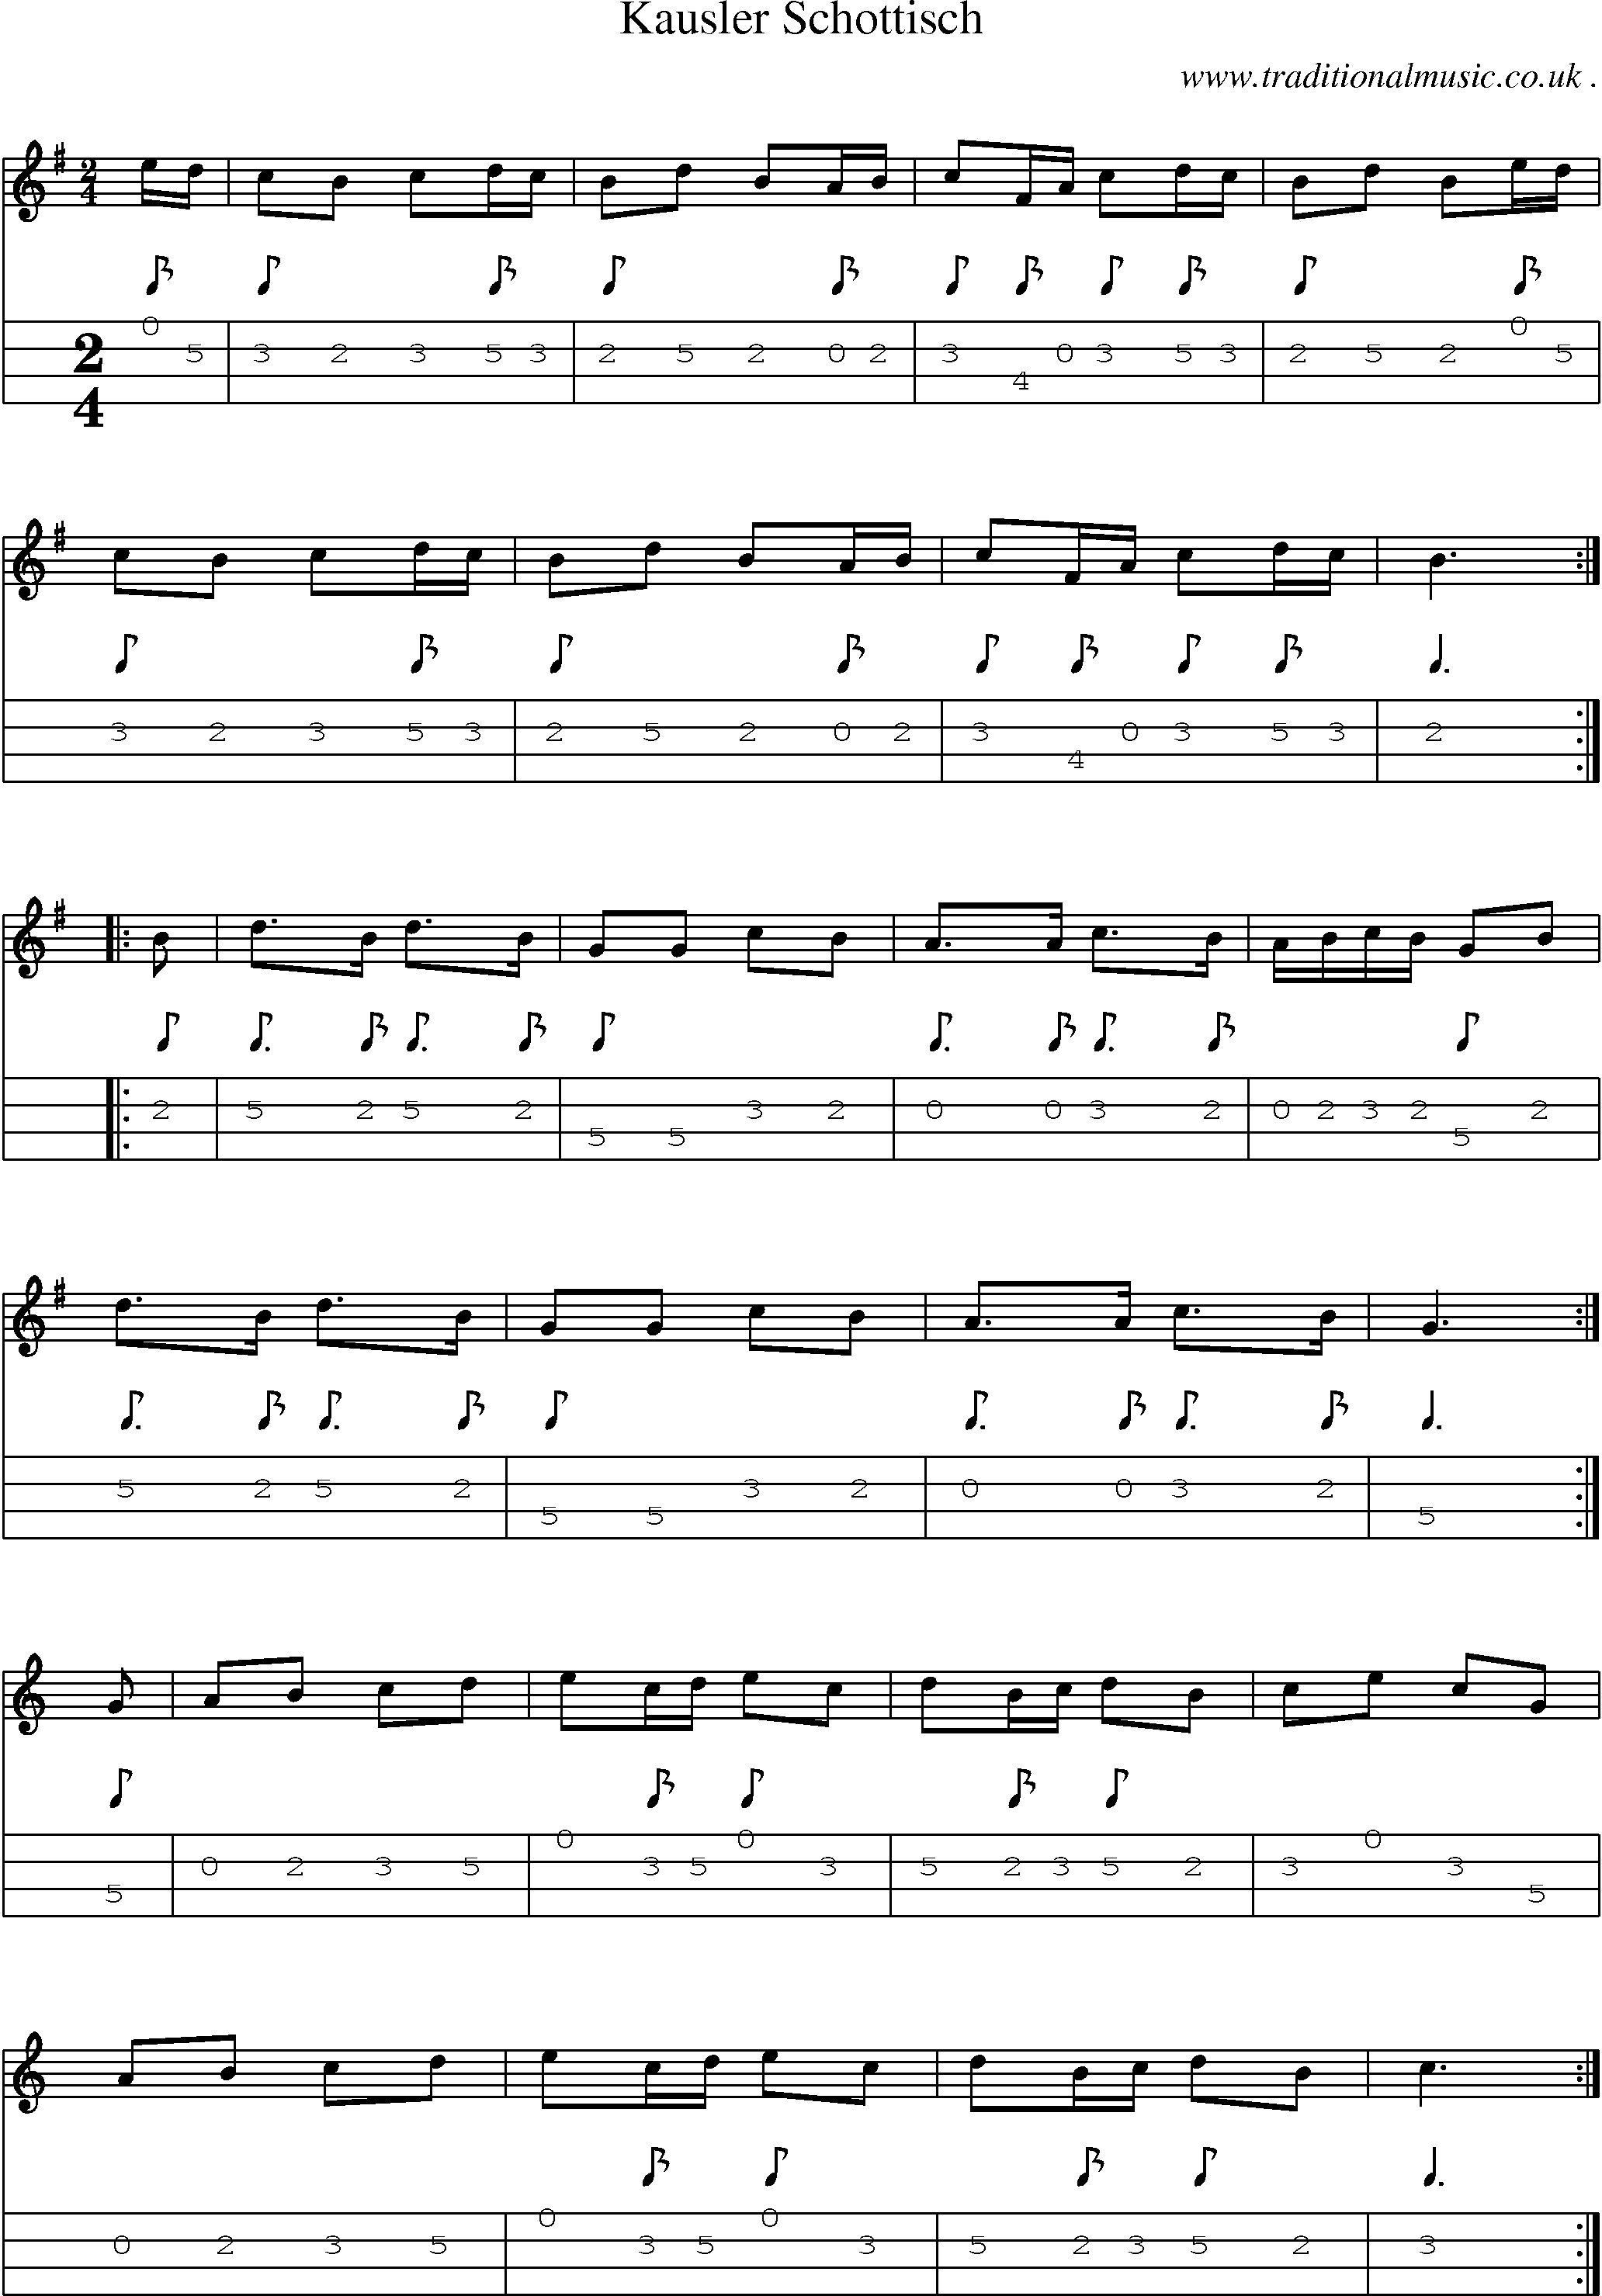 Sheet-Music and Mandolin Tabs for Kausler Schottisch